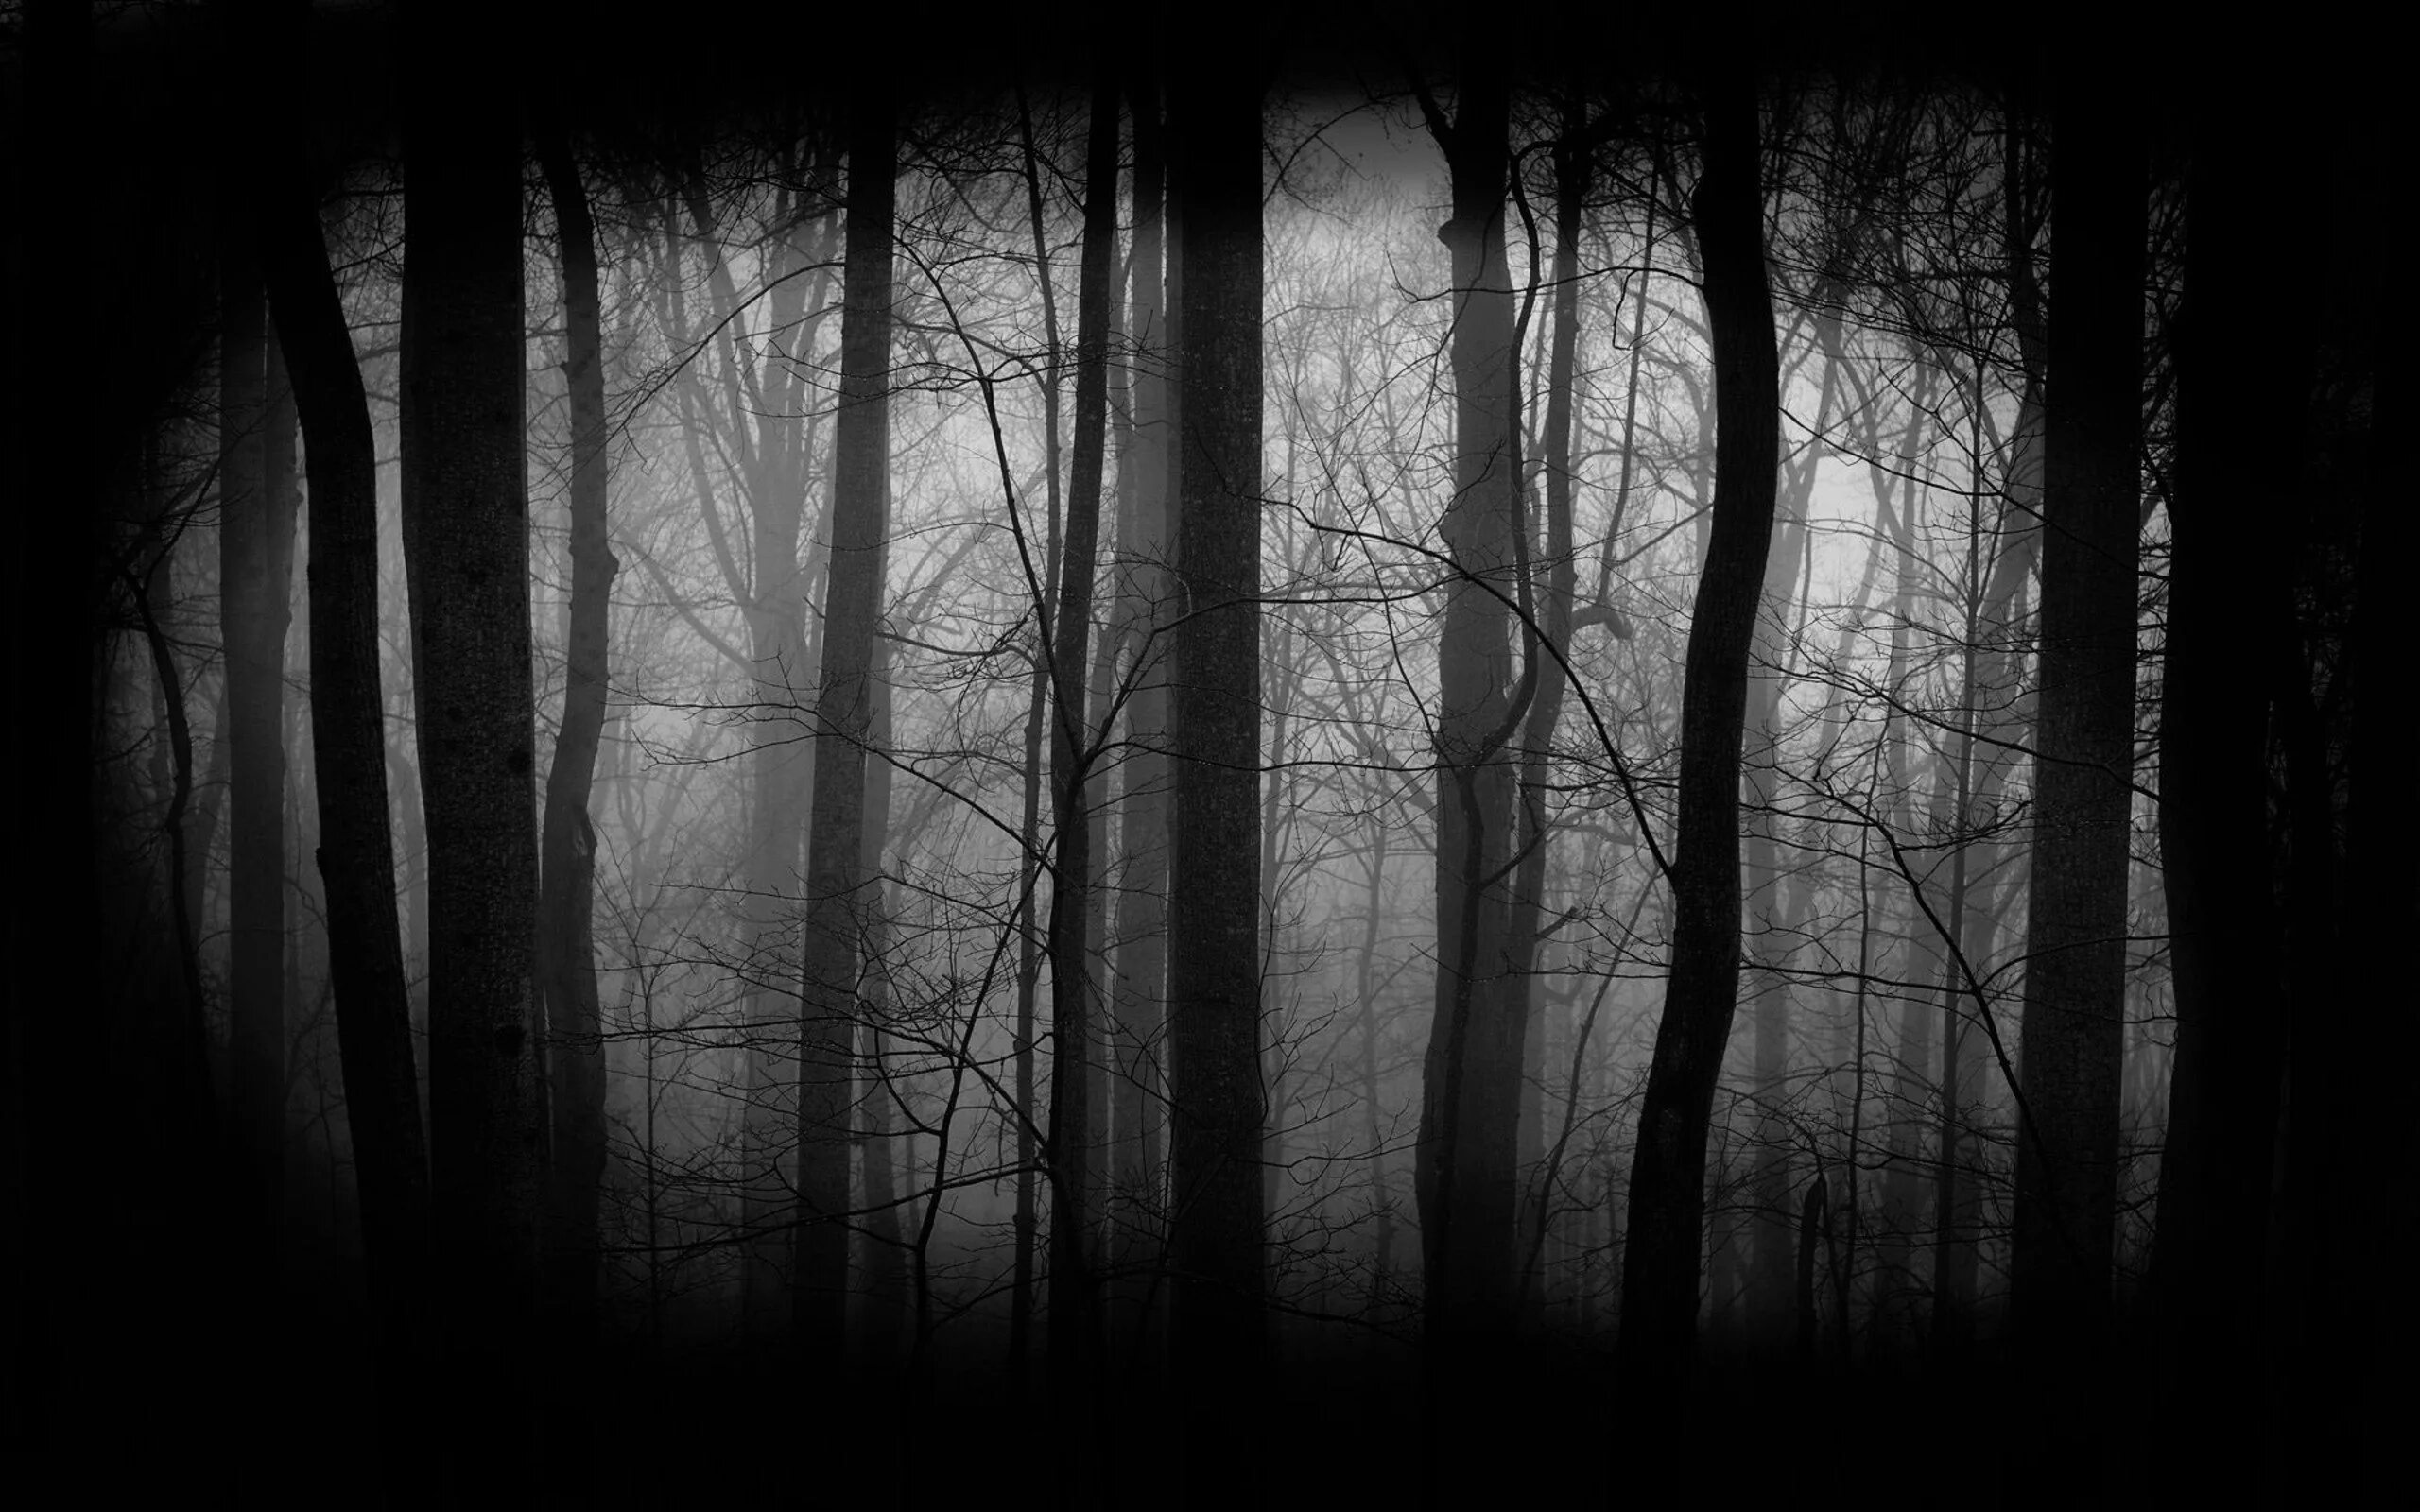 Dark хоррор. Темный лес. Мрачный лес. Лес темный страшный. Мрачный фон.